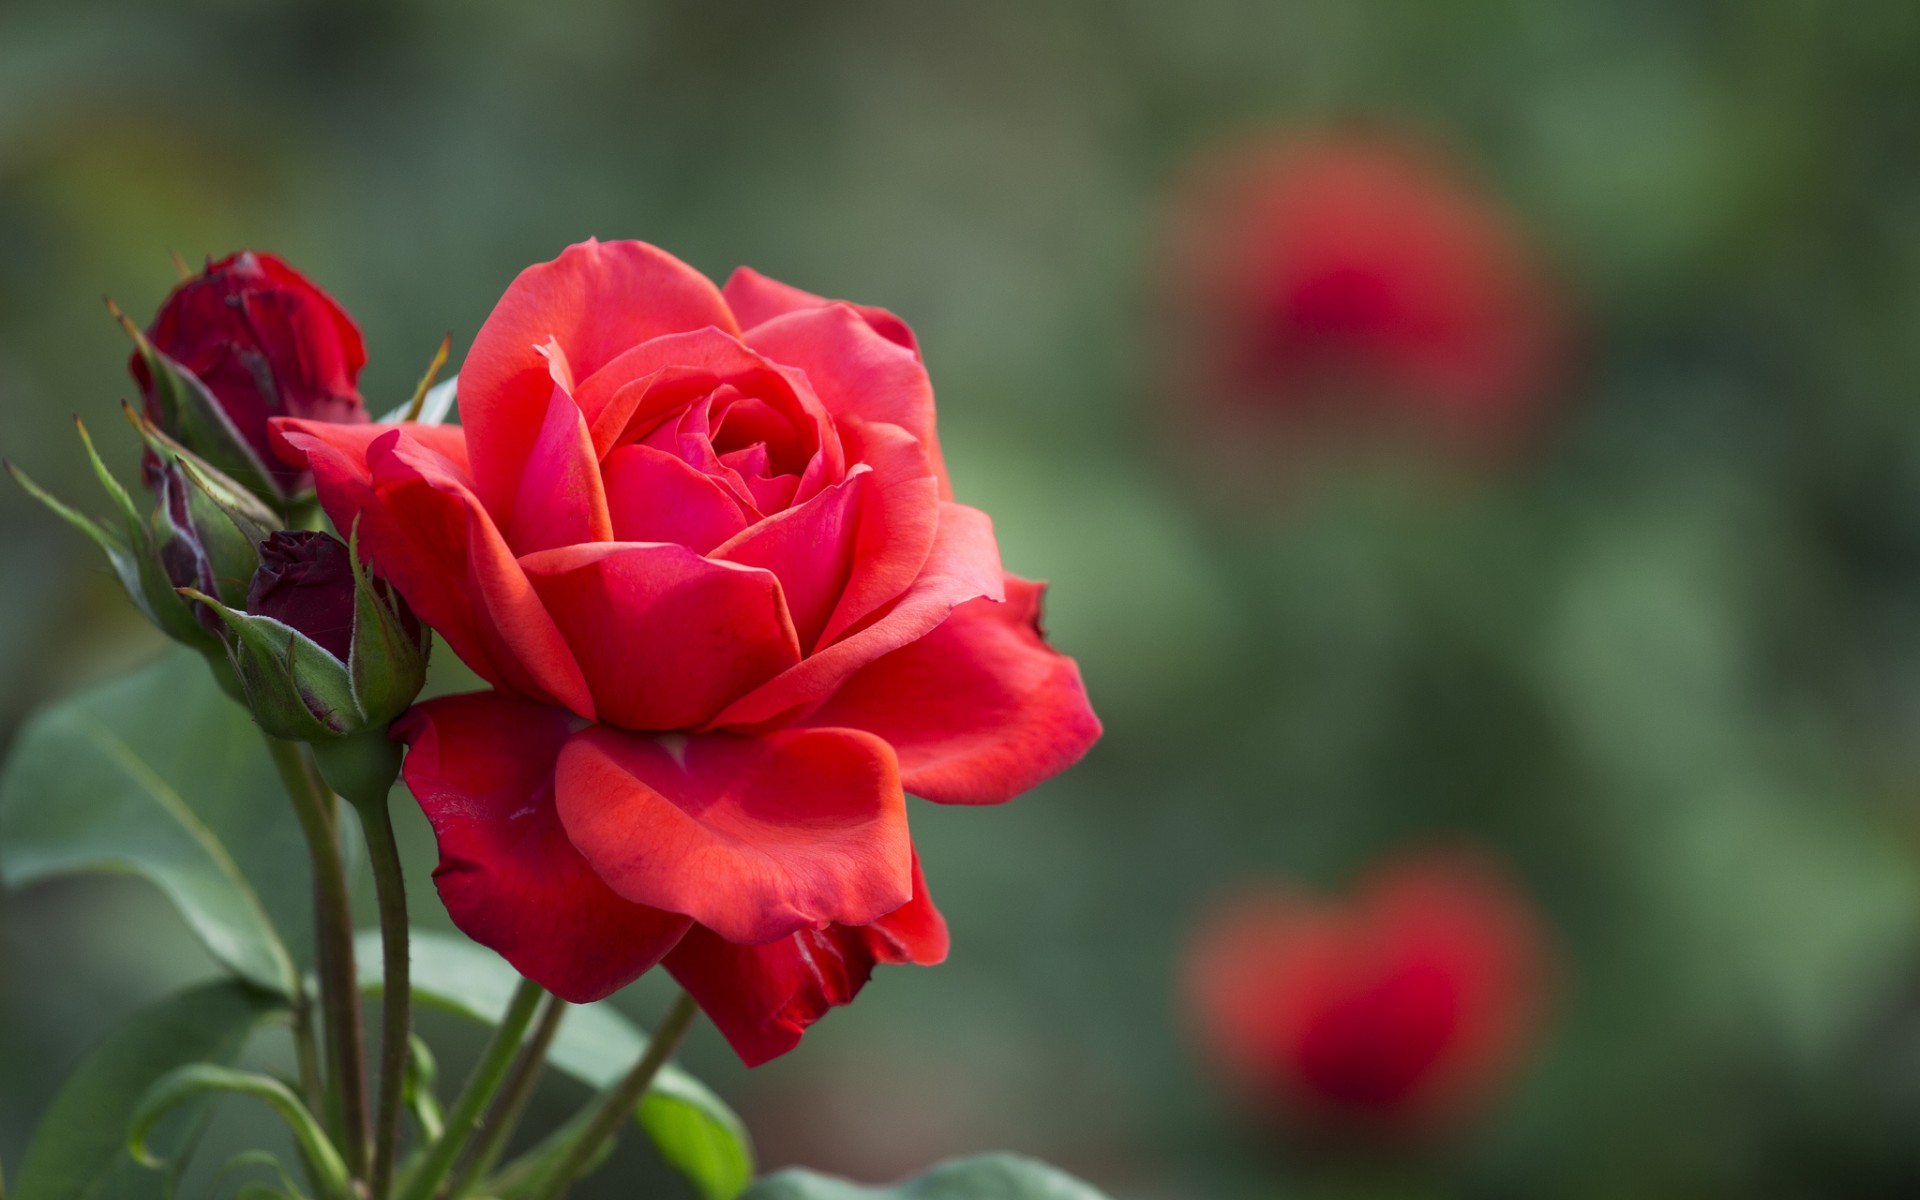 Кокетливая фигура, как ароматная роза, привлекающая внимание